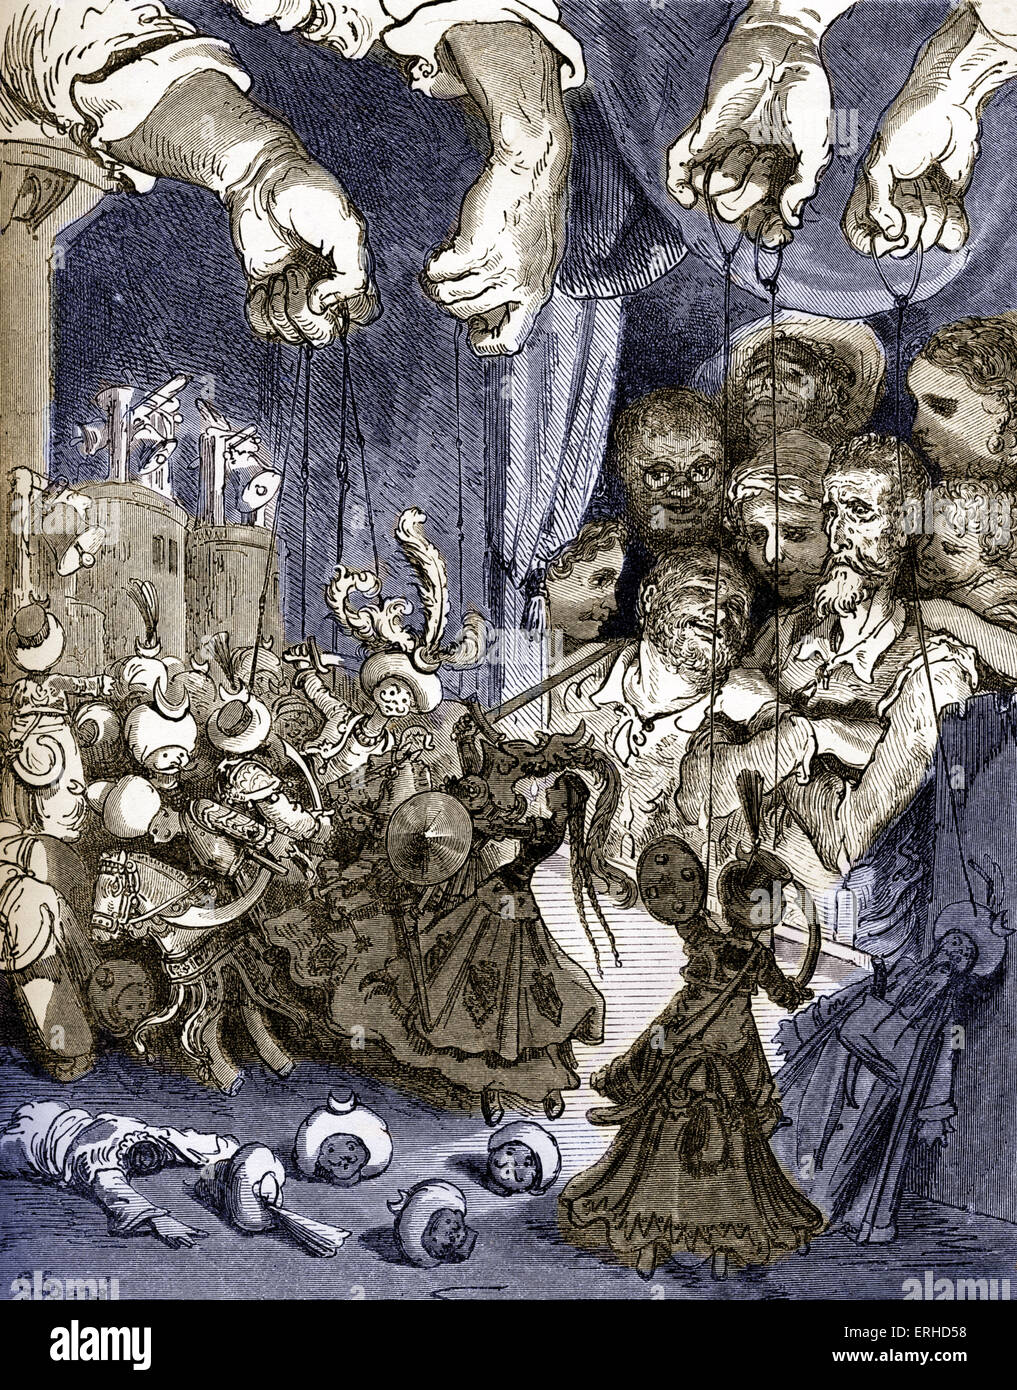 Die Geschichte von Don Quijote De La Mancha von Miguel de Cervantes, spanischer Autor geschrieben und illustriert von Gustav Dore. Stockfoto